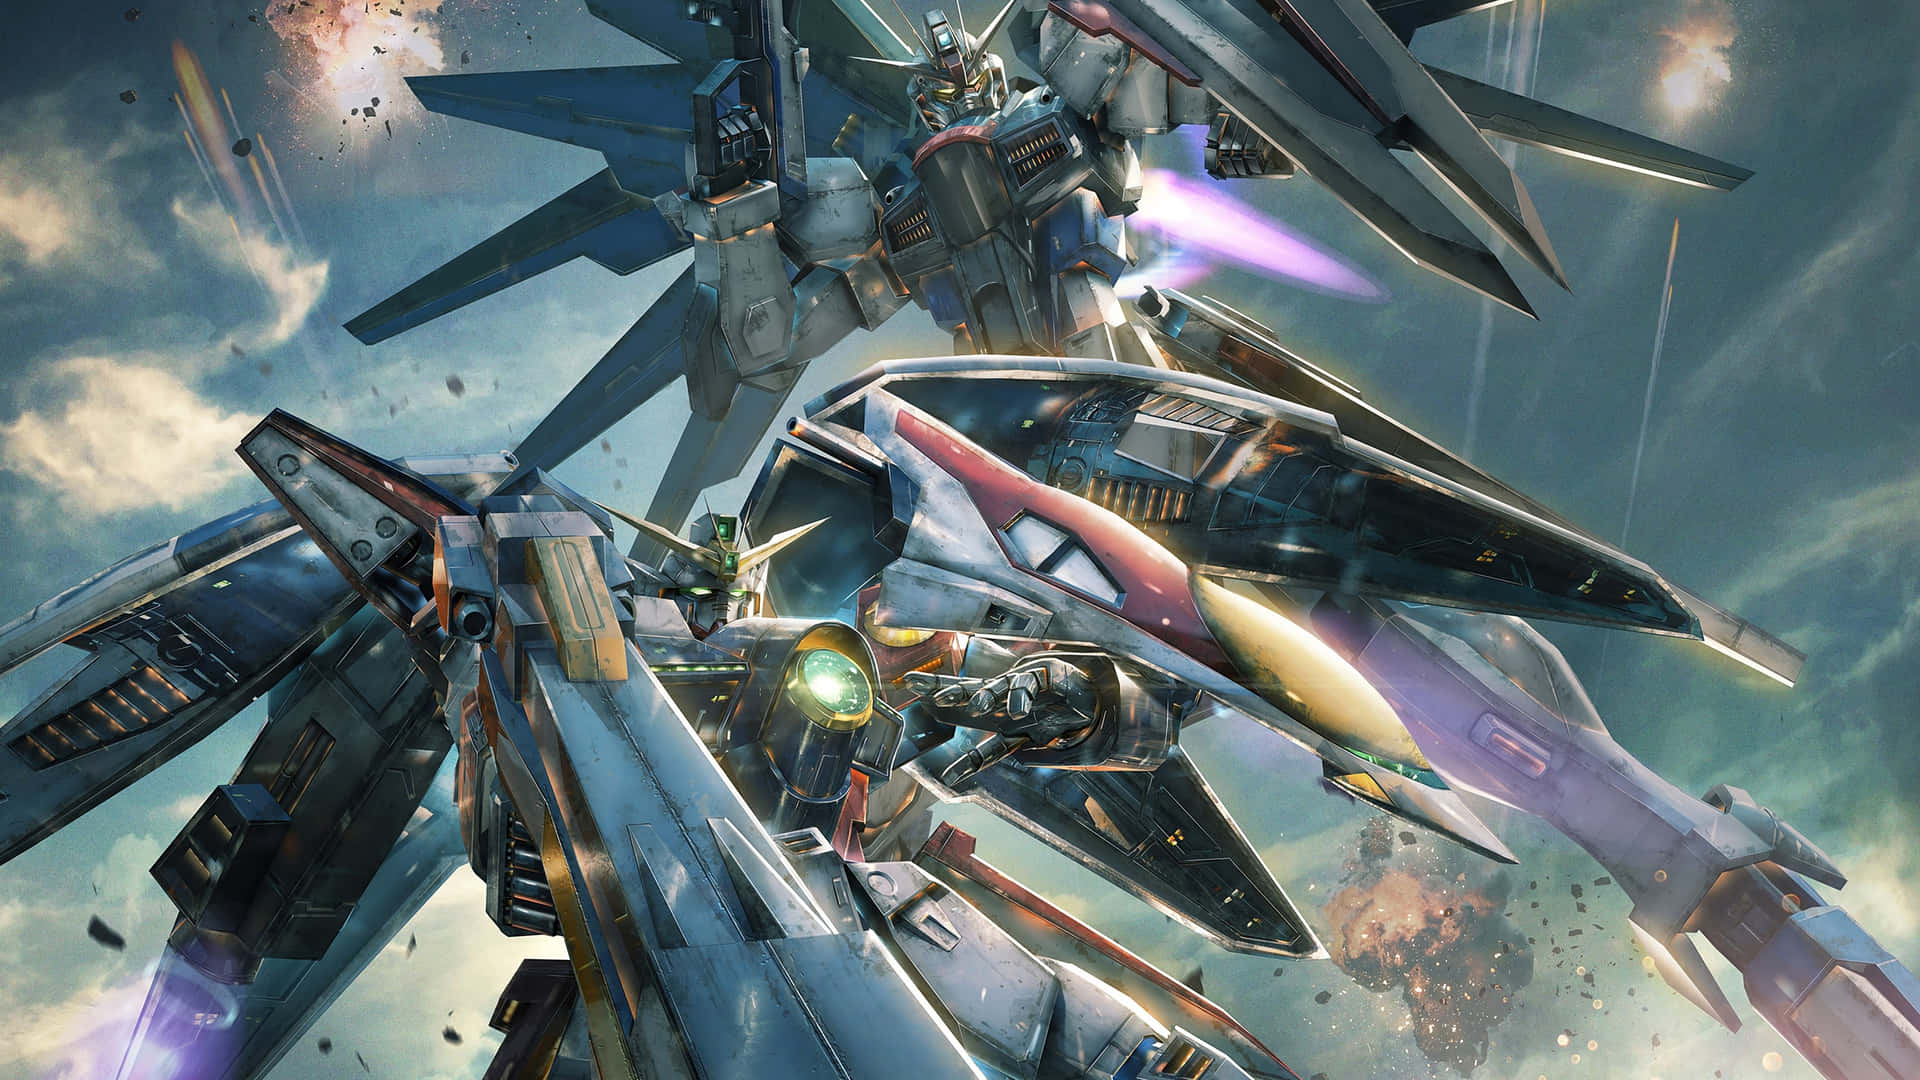 Erlebensie Das Epische Action-feeling Von Gundam Mit Diesen Unglaublichen 4k-bildern. Wallpaper